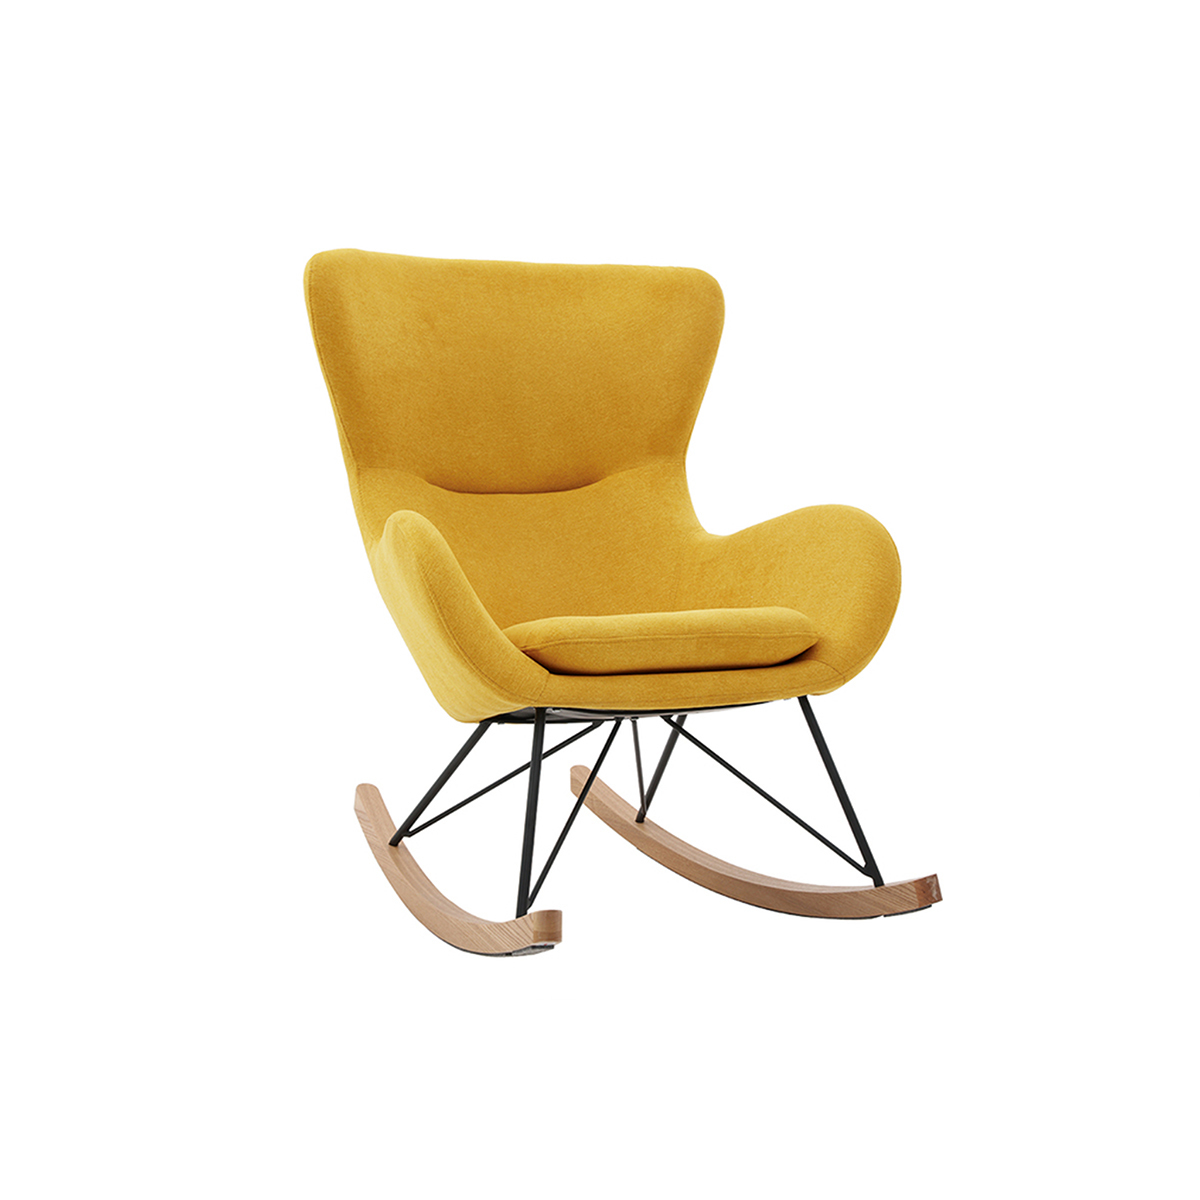 Rocking chair scandinave en tissu effet velours jaune moutarde, métal noir et bois clair ESKUA vue1